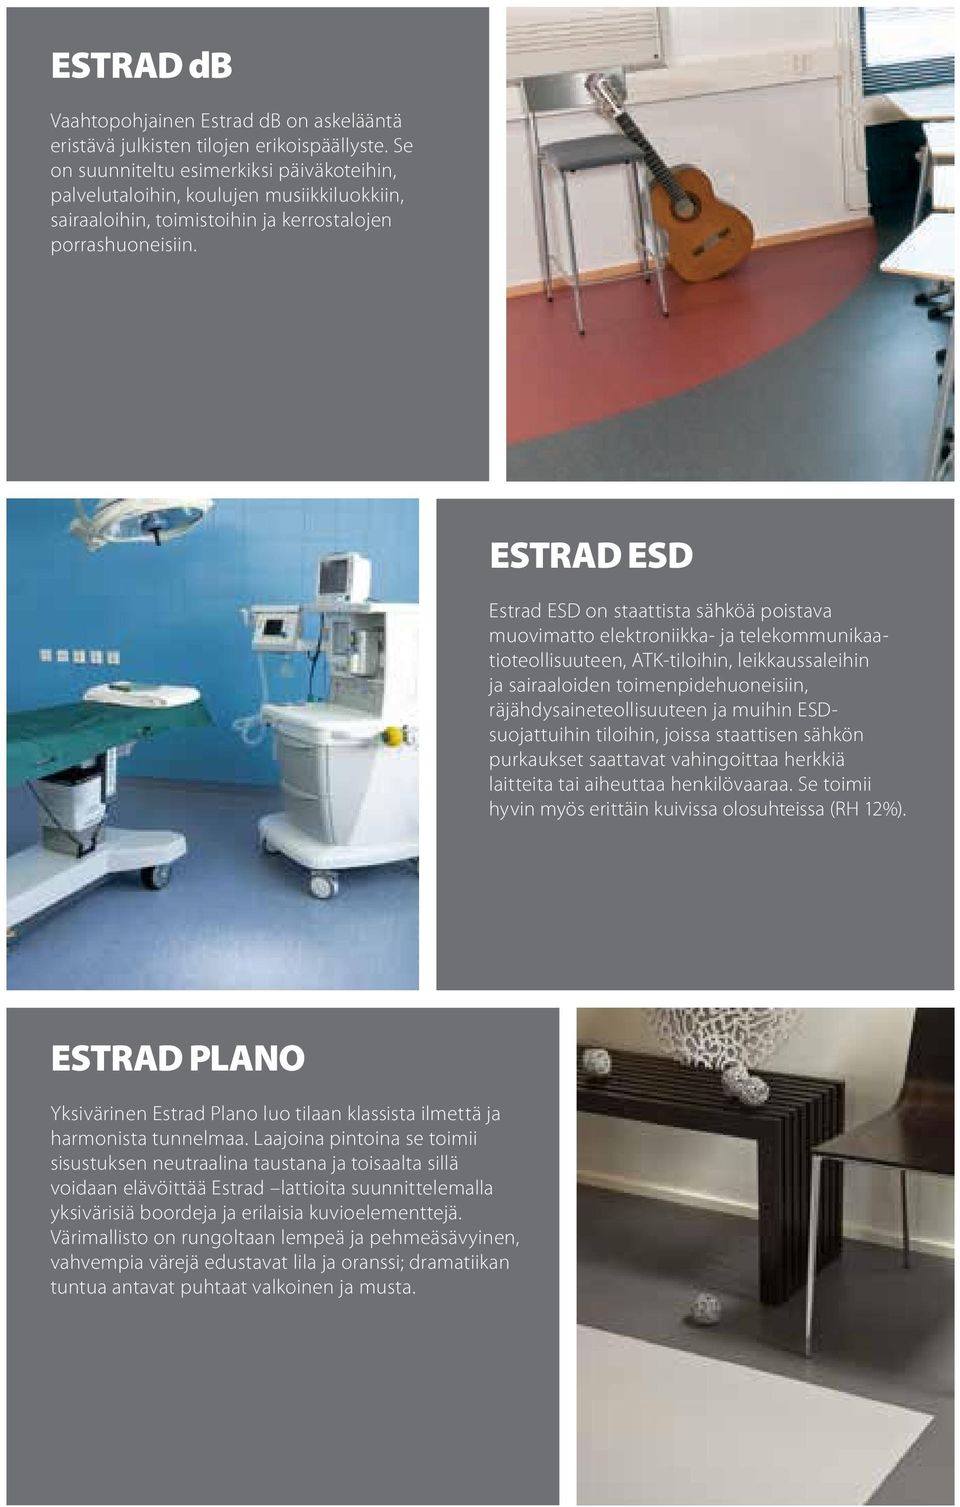 ESTRAD ESD Estrad ESD on staattista sähköä poistava muovimatto elektroniikka- ja telekommunikaatioteollisuuteen, ATK-tiloihin, leikkaussaleihin ja sairaaloiden toimenpidehuoneisiin,